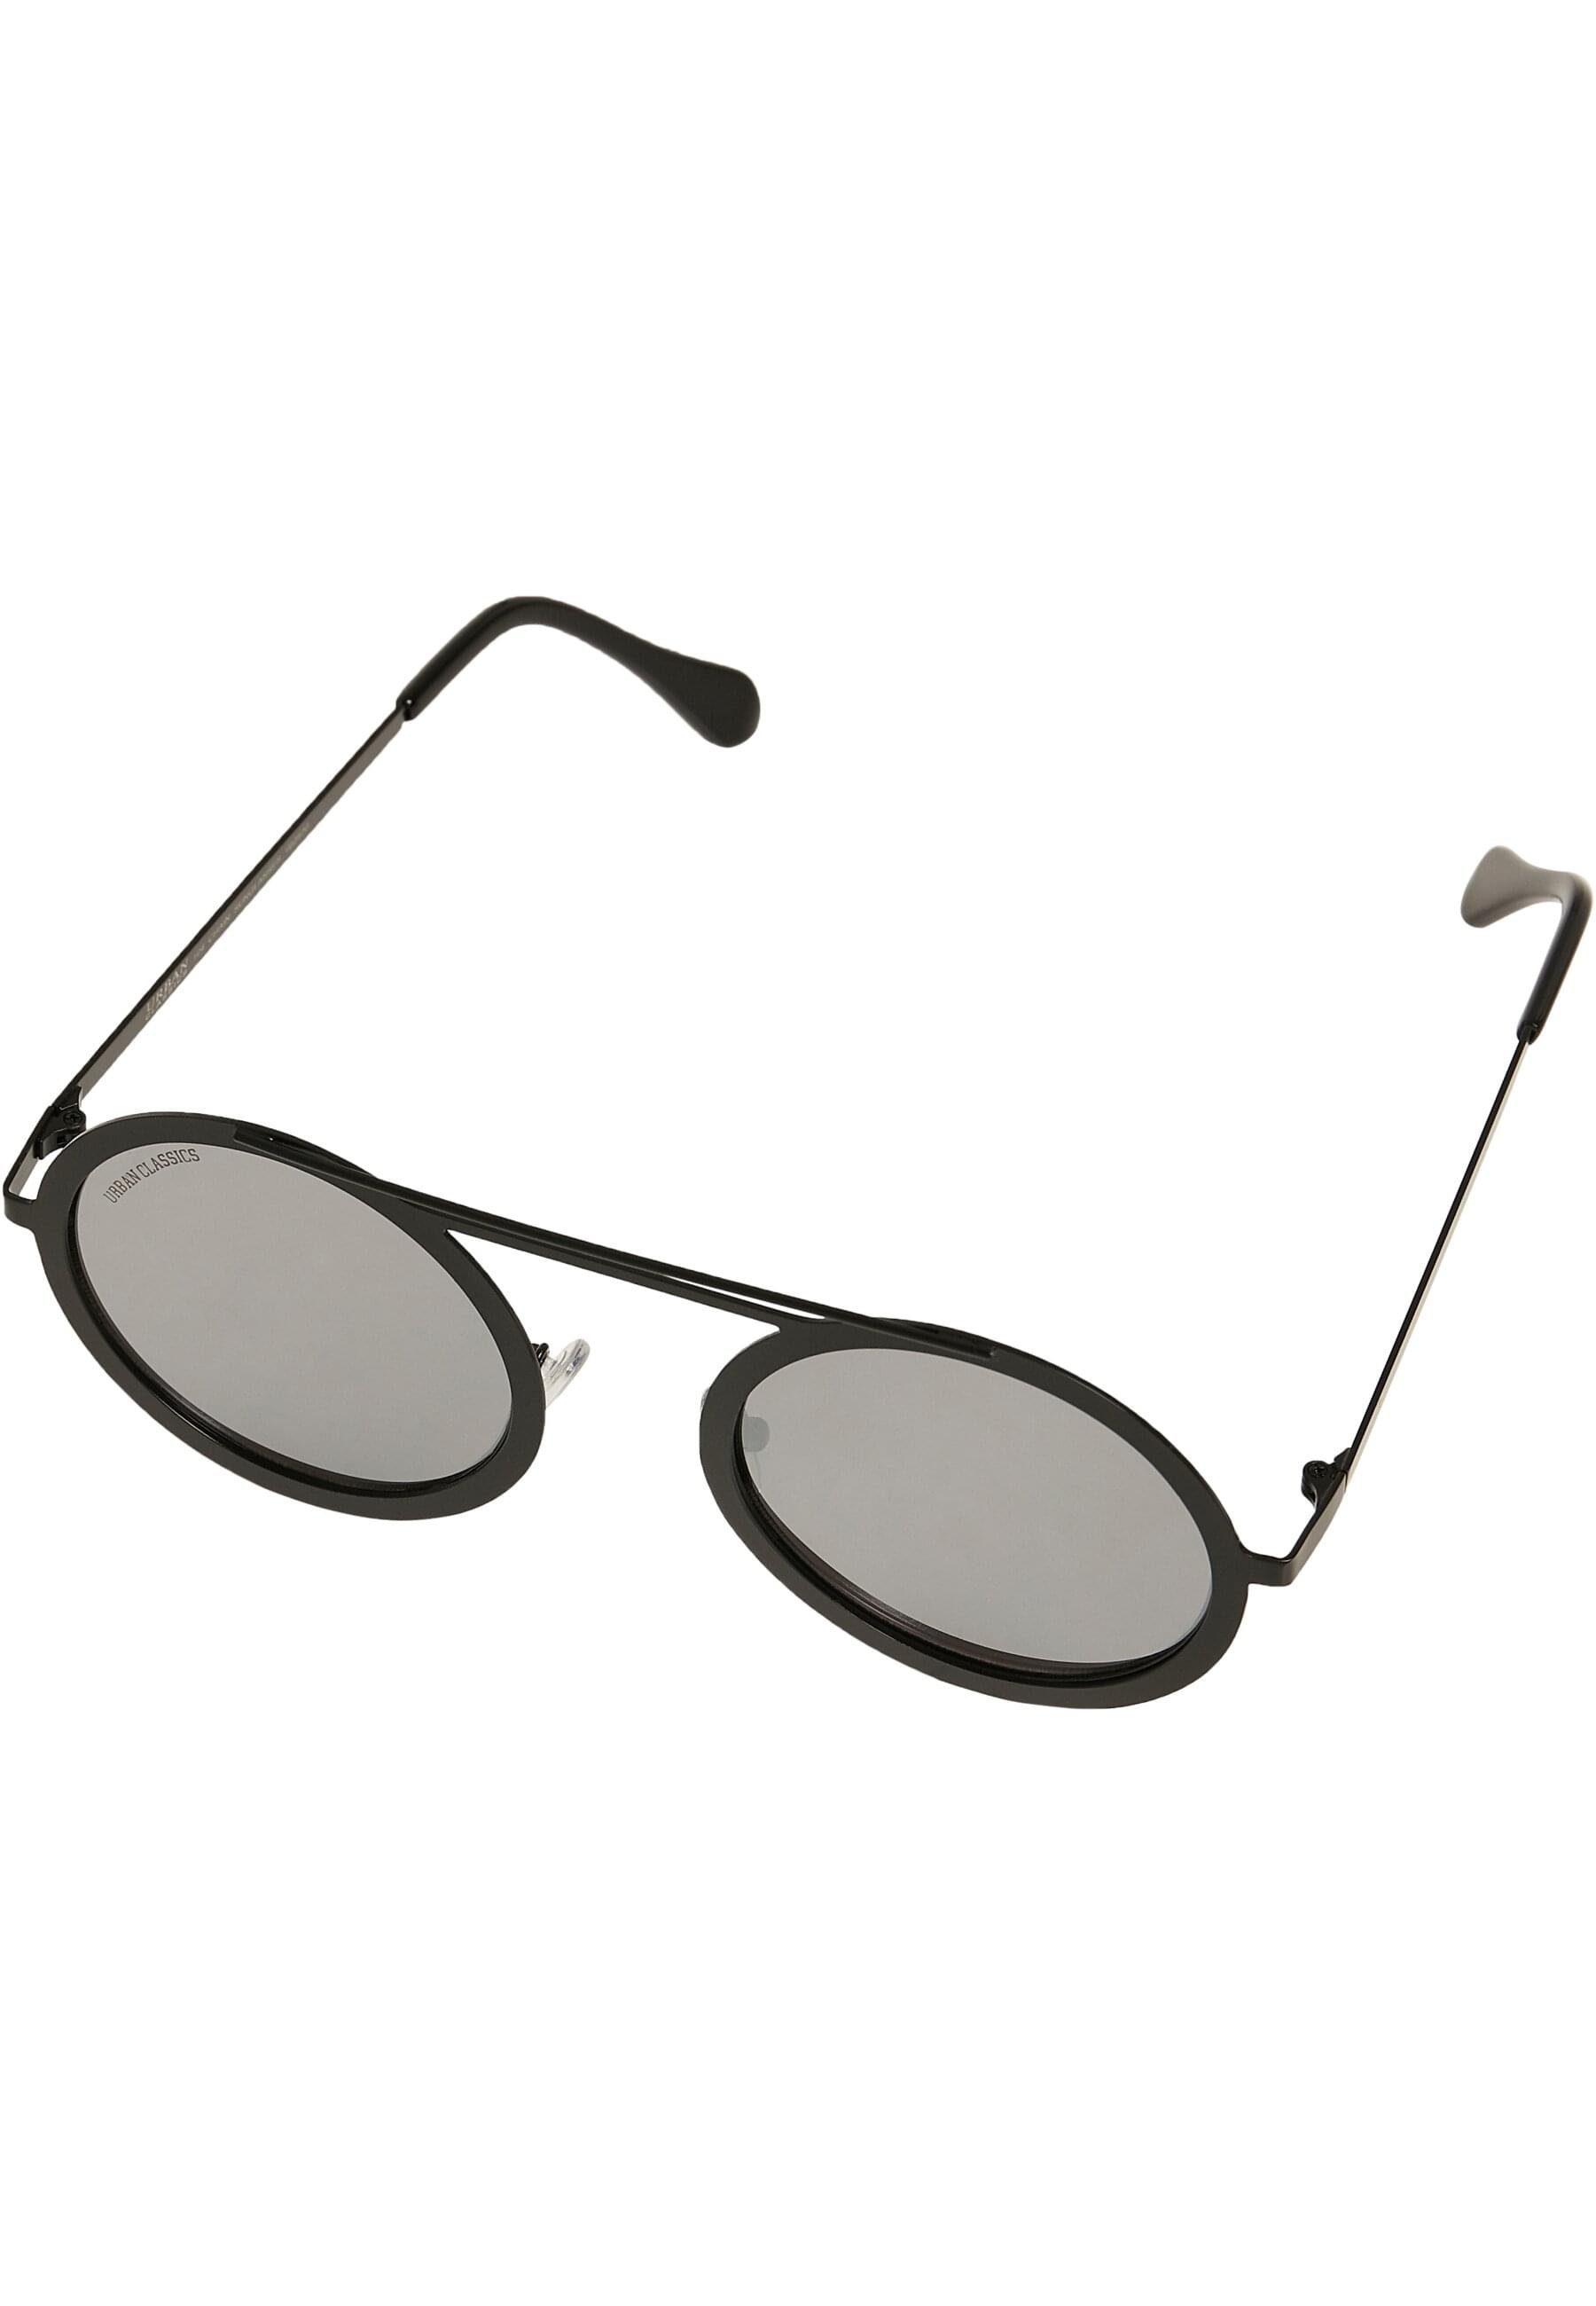 URBAN CLASSICS Sonnenbrille Unisex mirror/black Sunglasses silver Chain 104